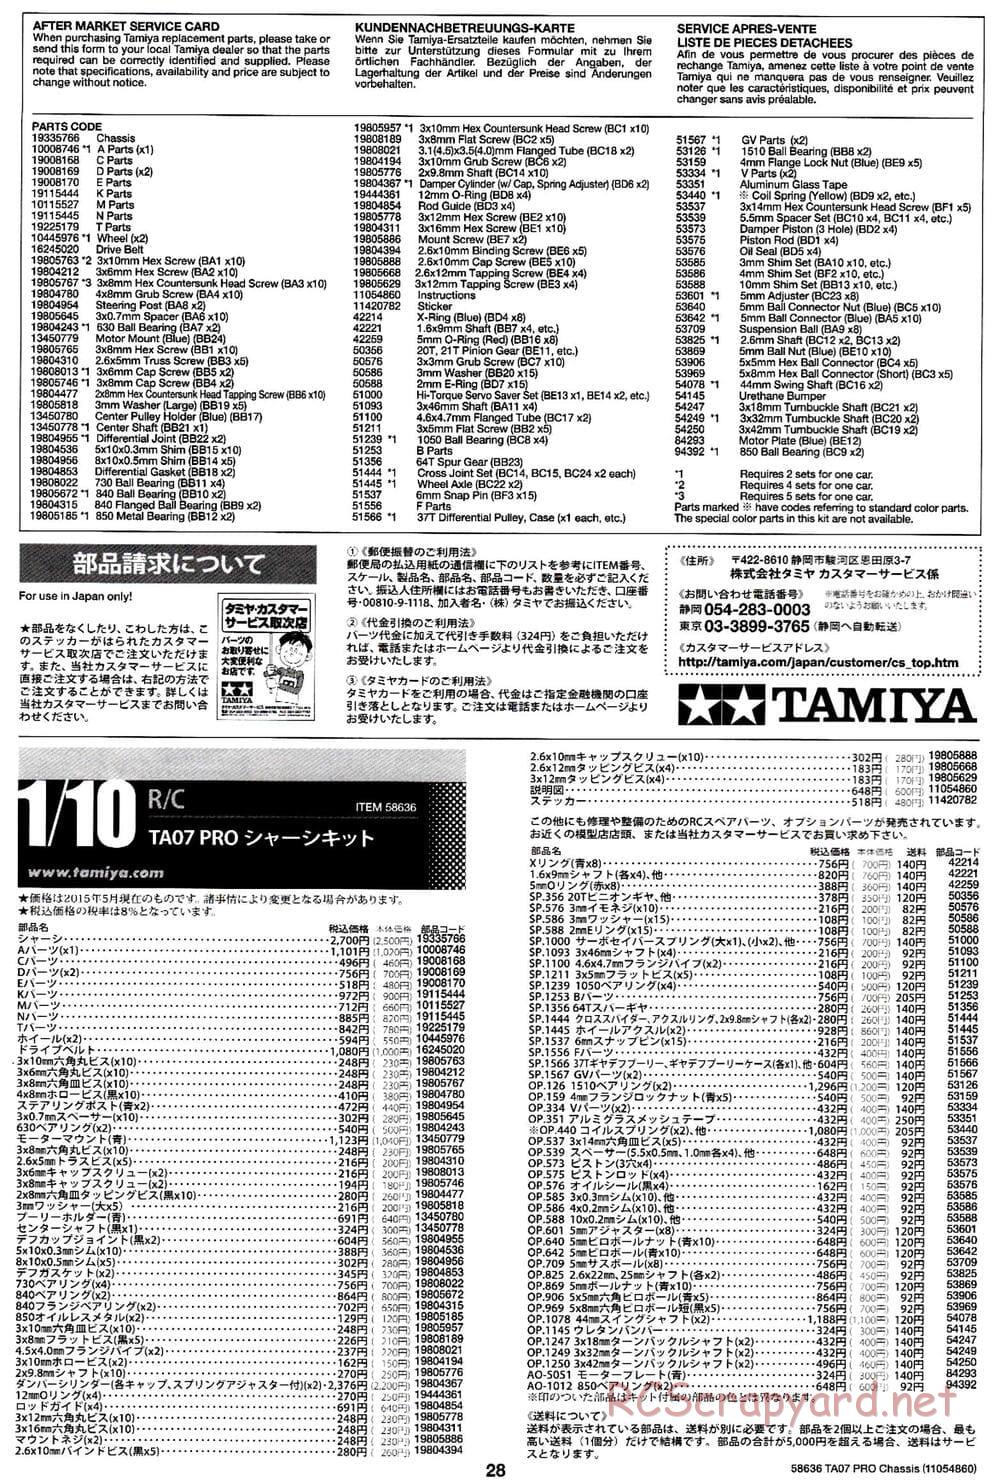 Tamiya - TA07 Pro Chassis - Manual - Page 28